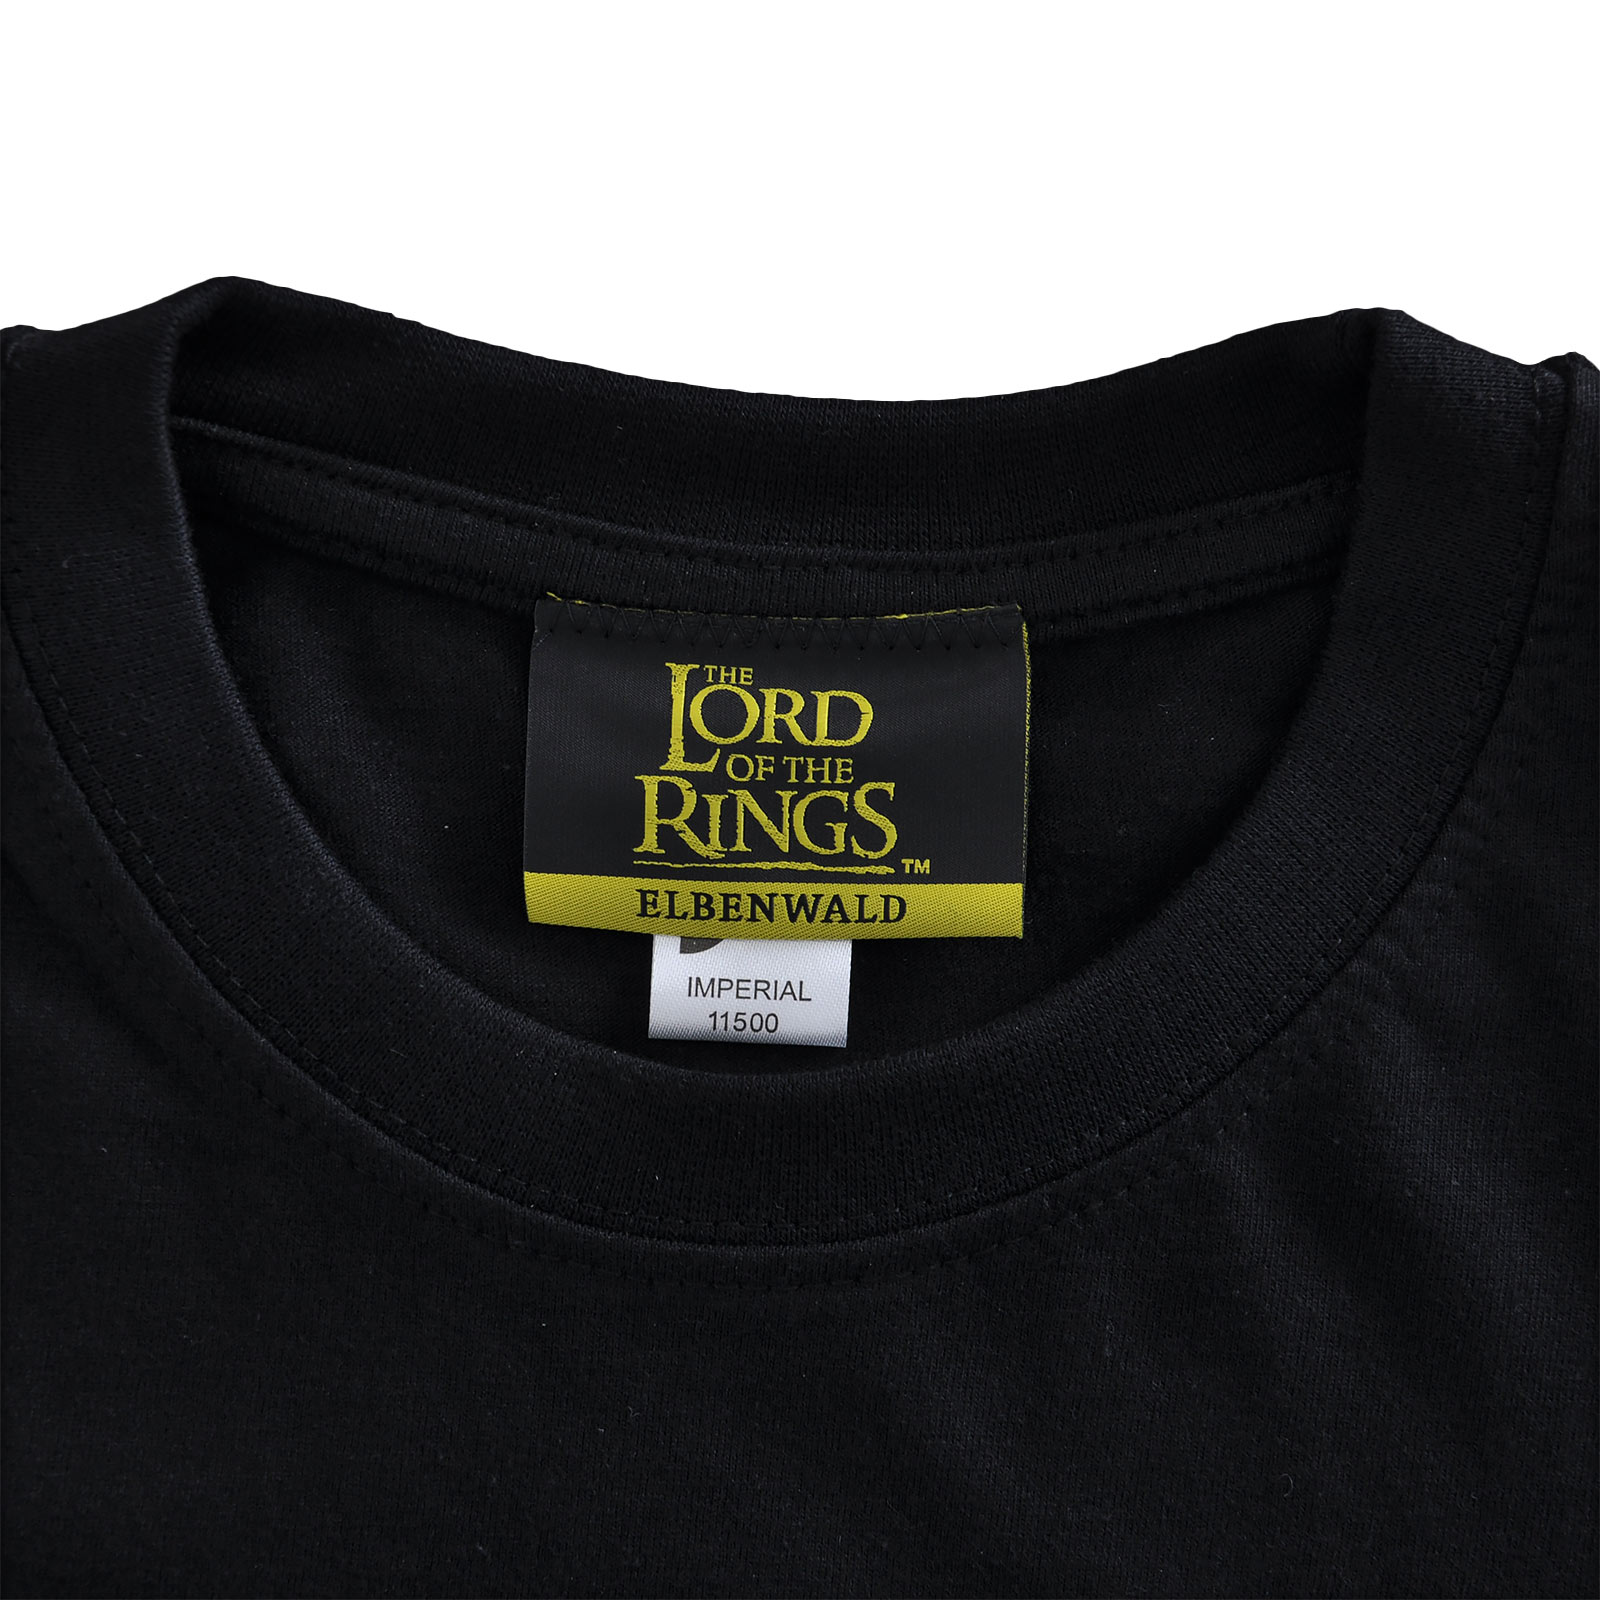 Herr der Ringe - Ring der Macht T-Shirt schwarz